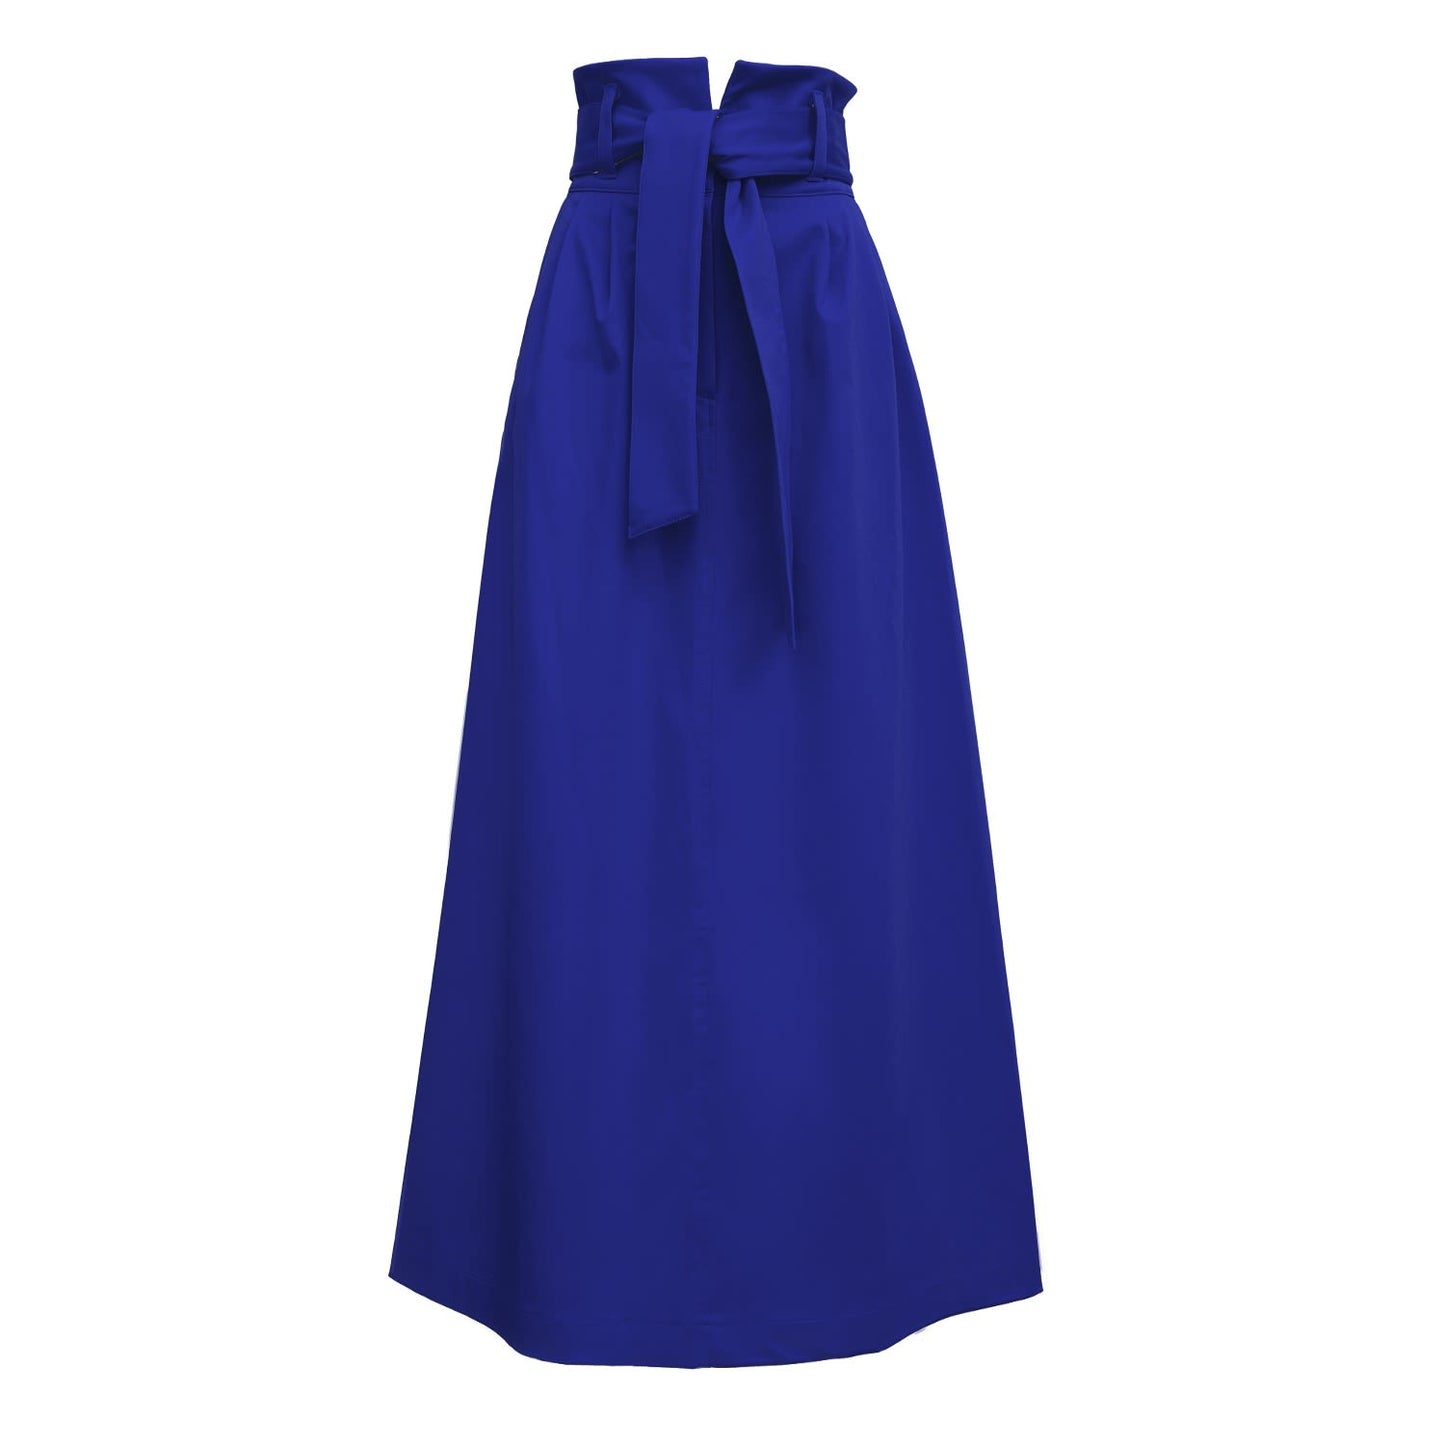 Blue High Waist A-Line Long Skirt With Belt